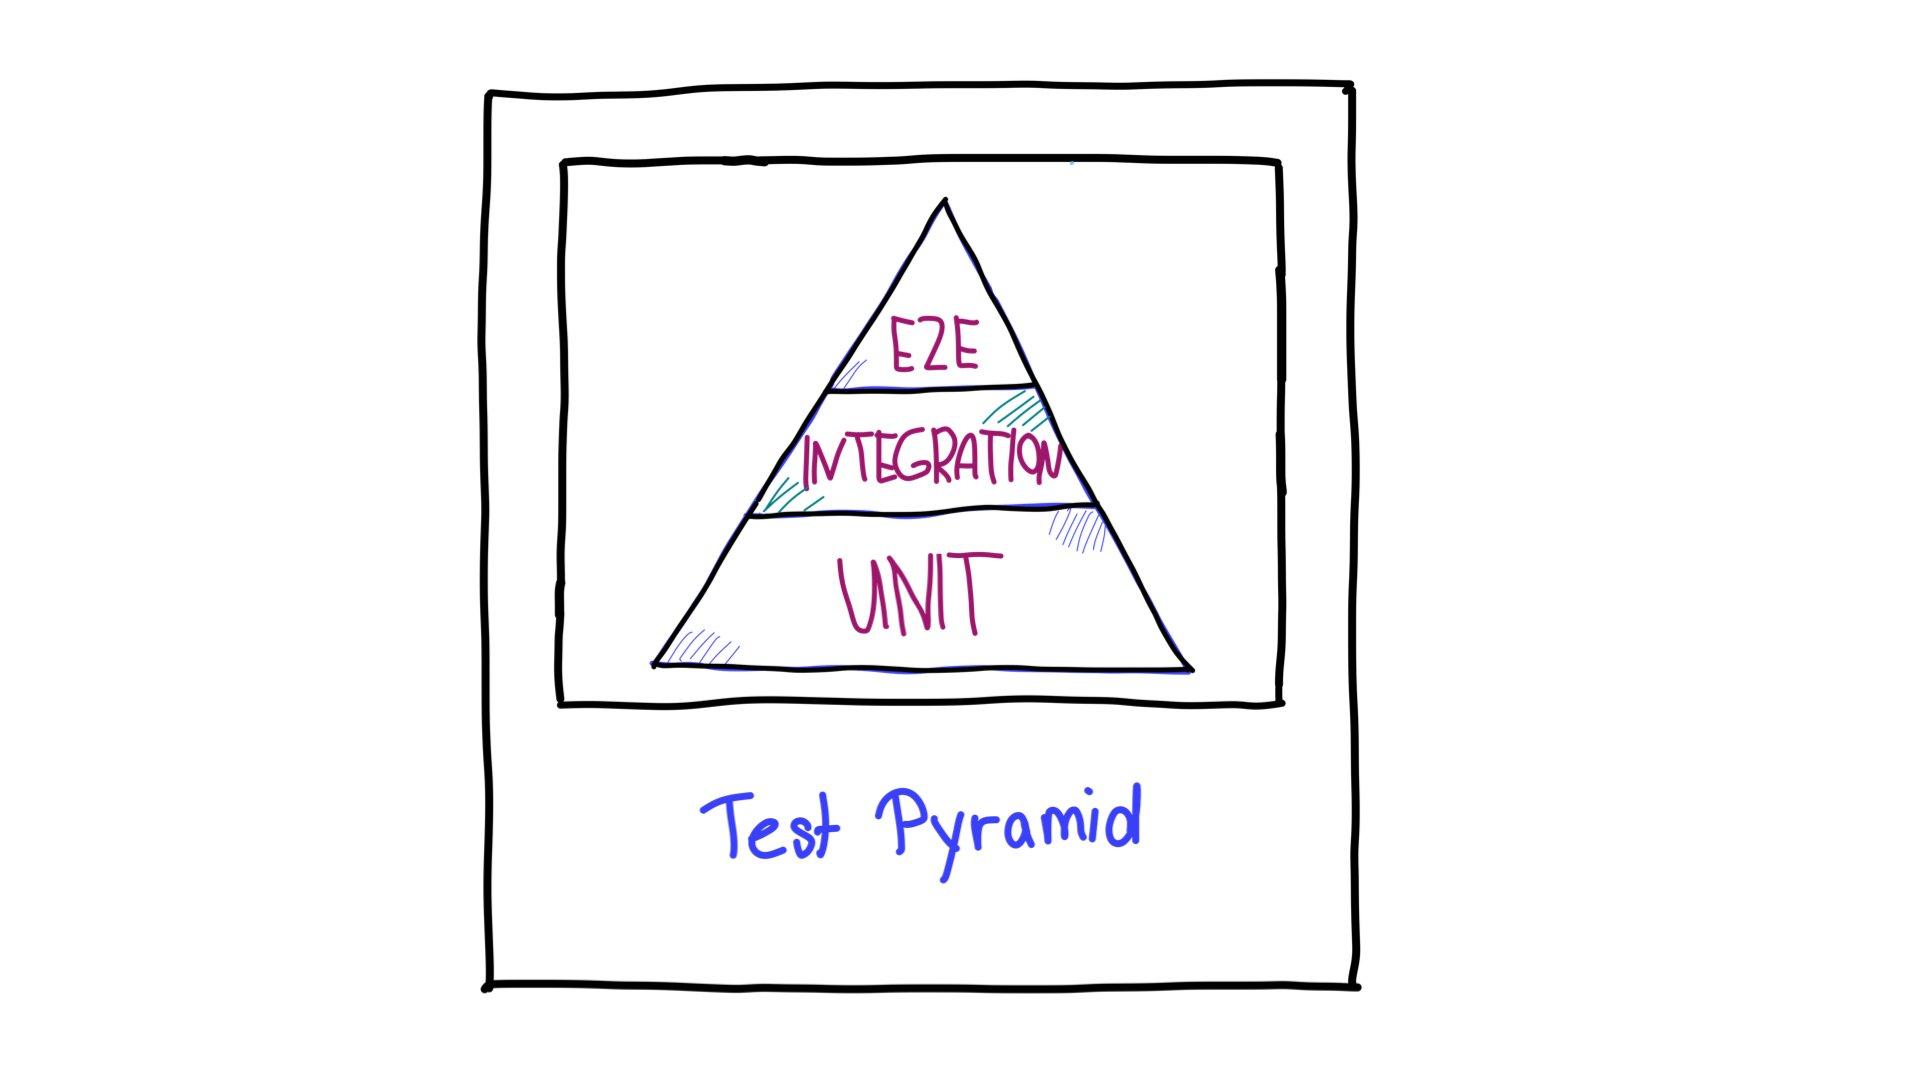 测试金字塔，顶部是端到端 (E2E) 测试，中间是集成测试，底部是单元测试。